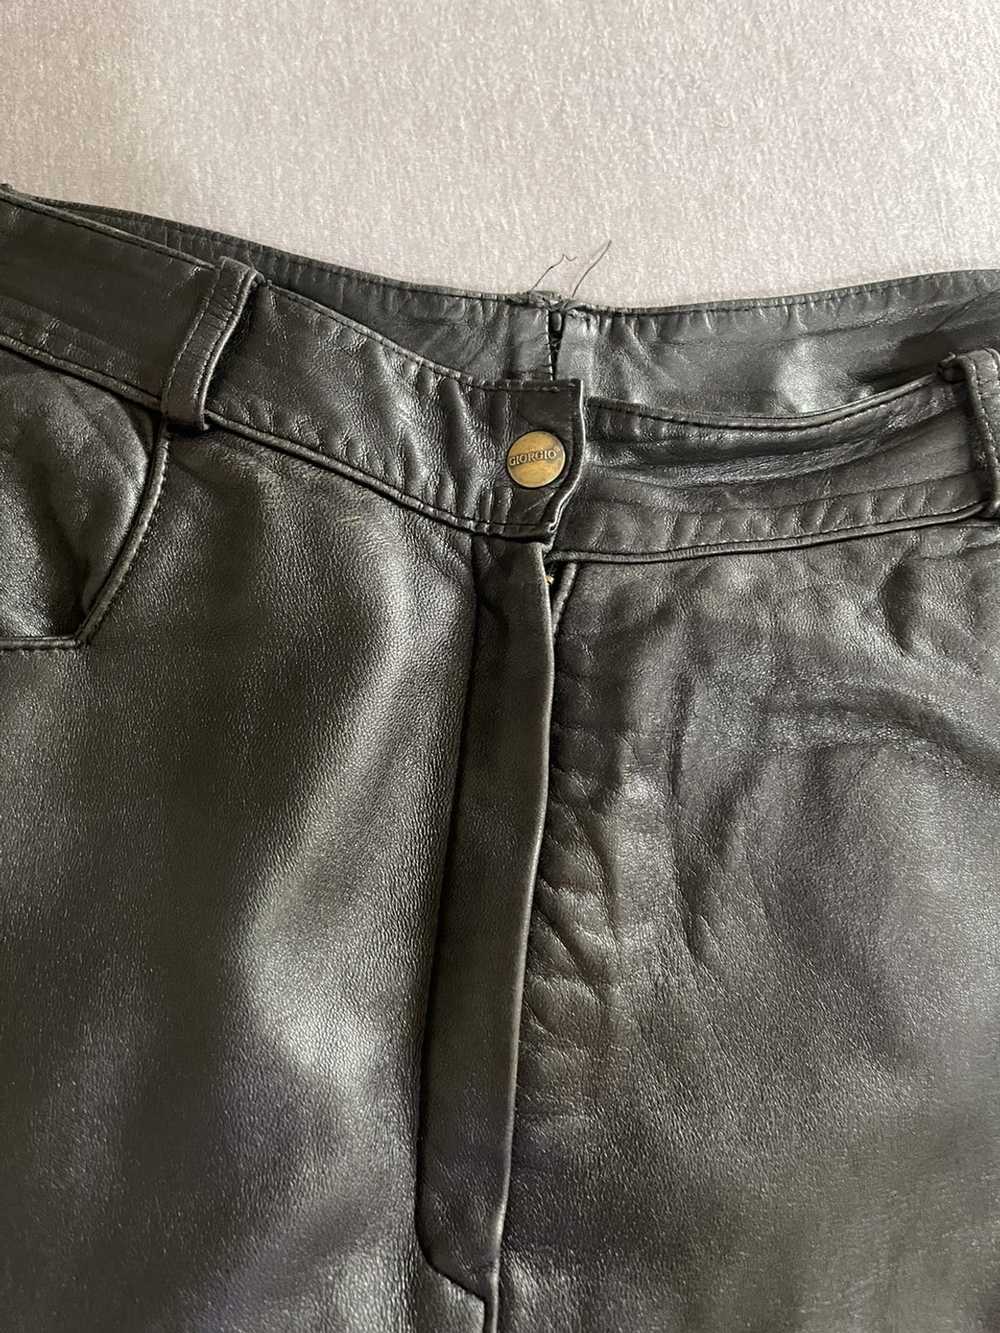 Giorgio Armani Giorgio Armani Aged Black Leather … - image 2